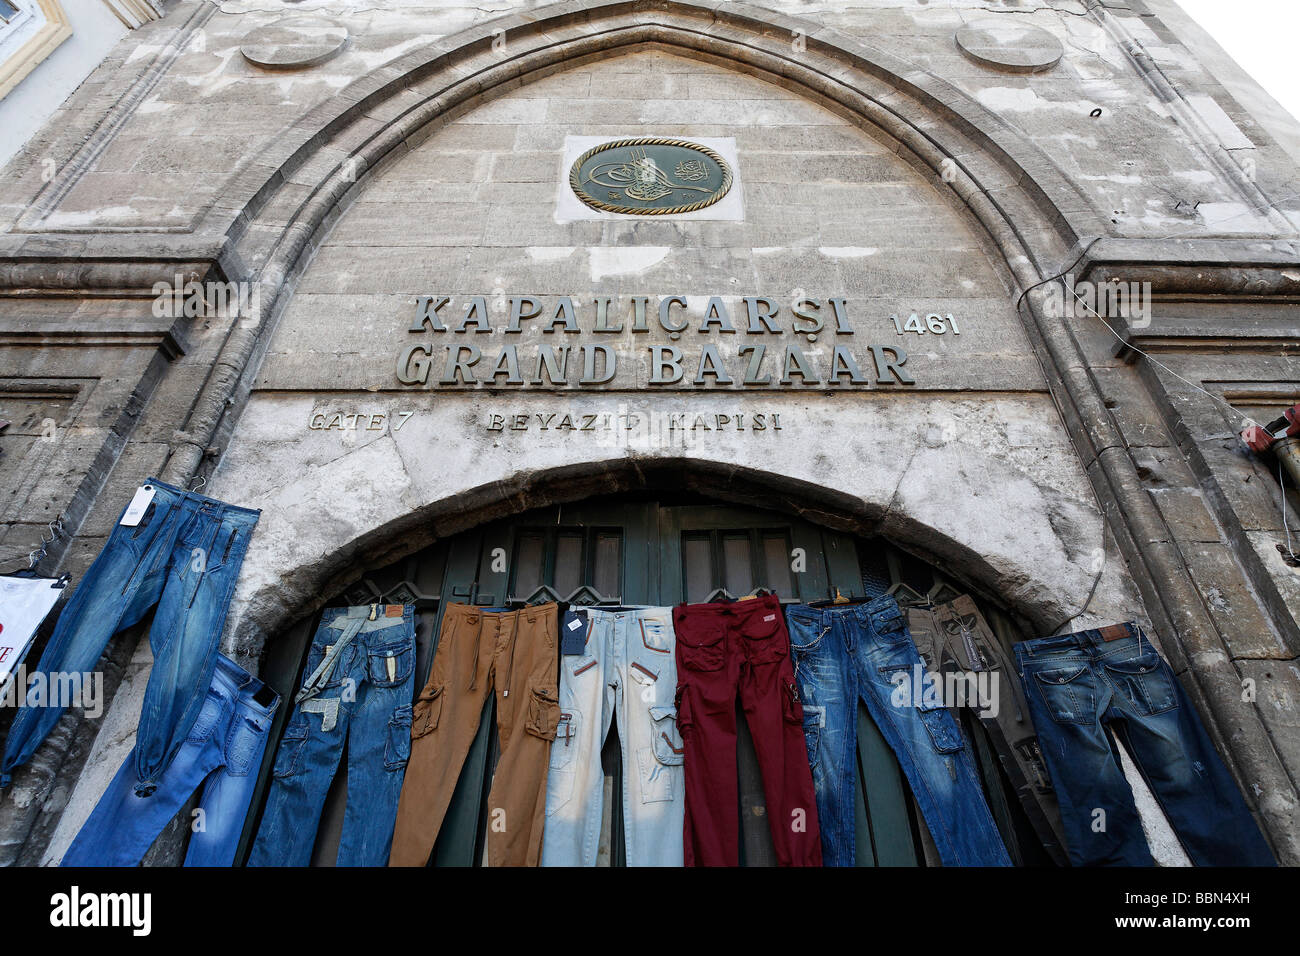 Chiuso ingresso al Grand Bazaar, appeso con jeans, scritte Grand Bazaar, Beyazit Square, Istanbul, Turchia Foto Stock